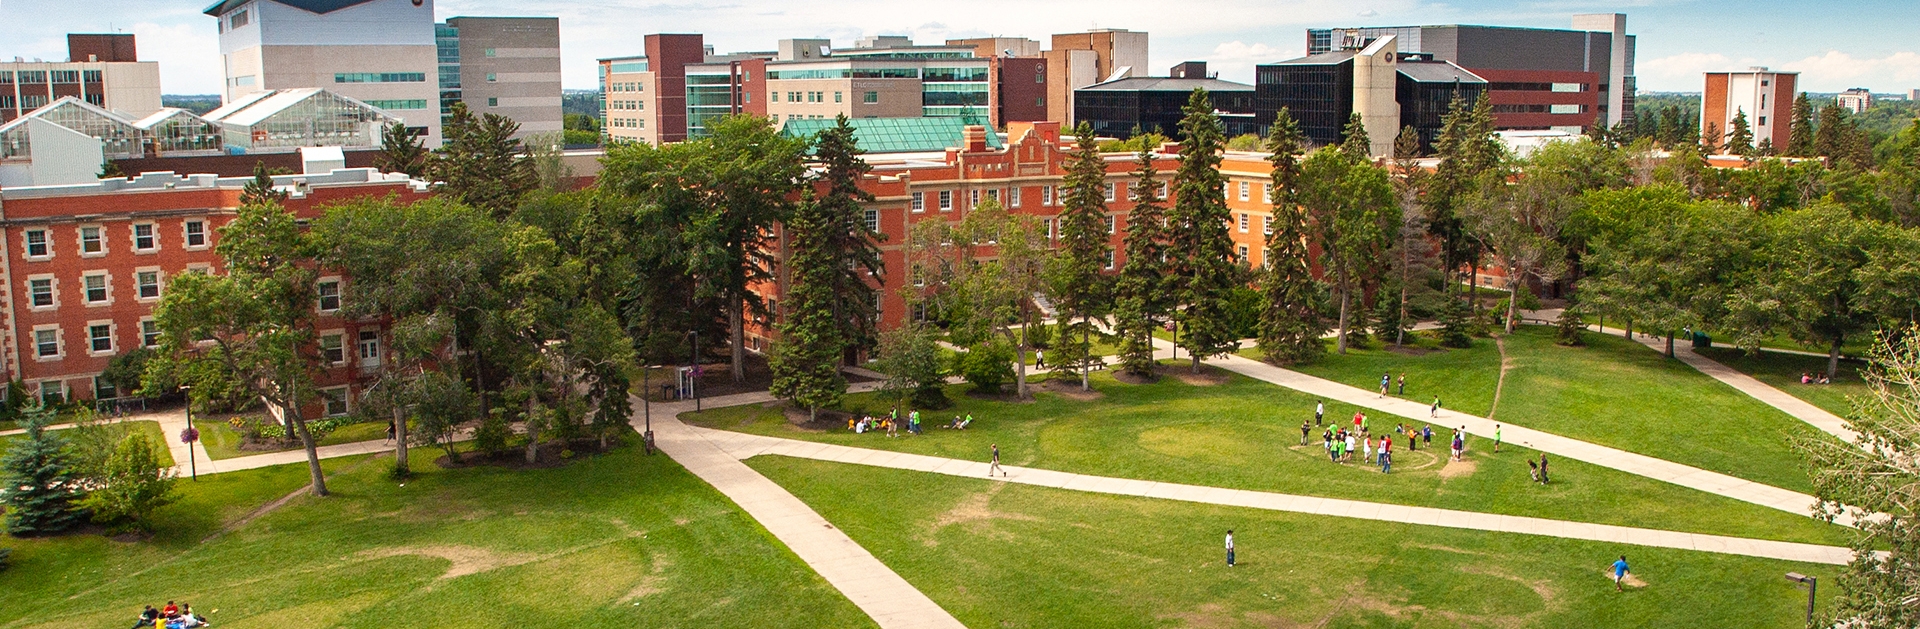 University of Alberta campus quad